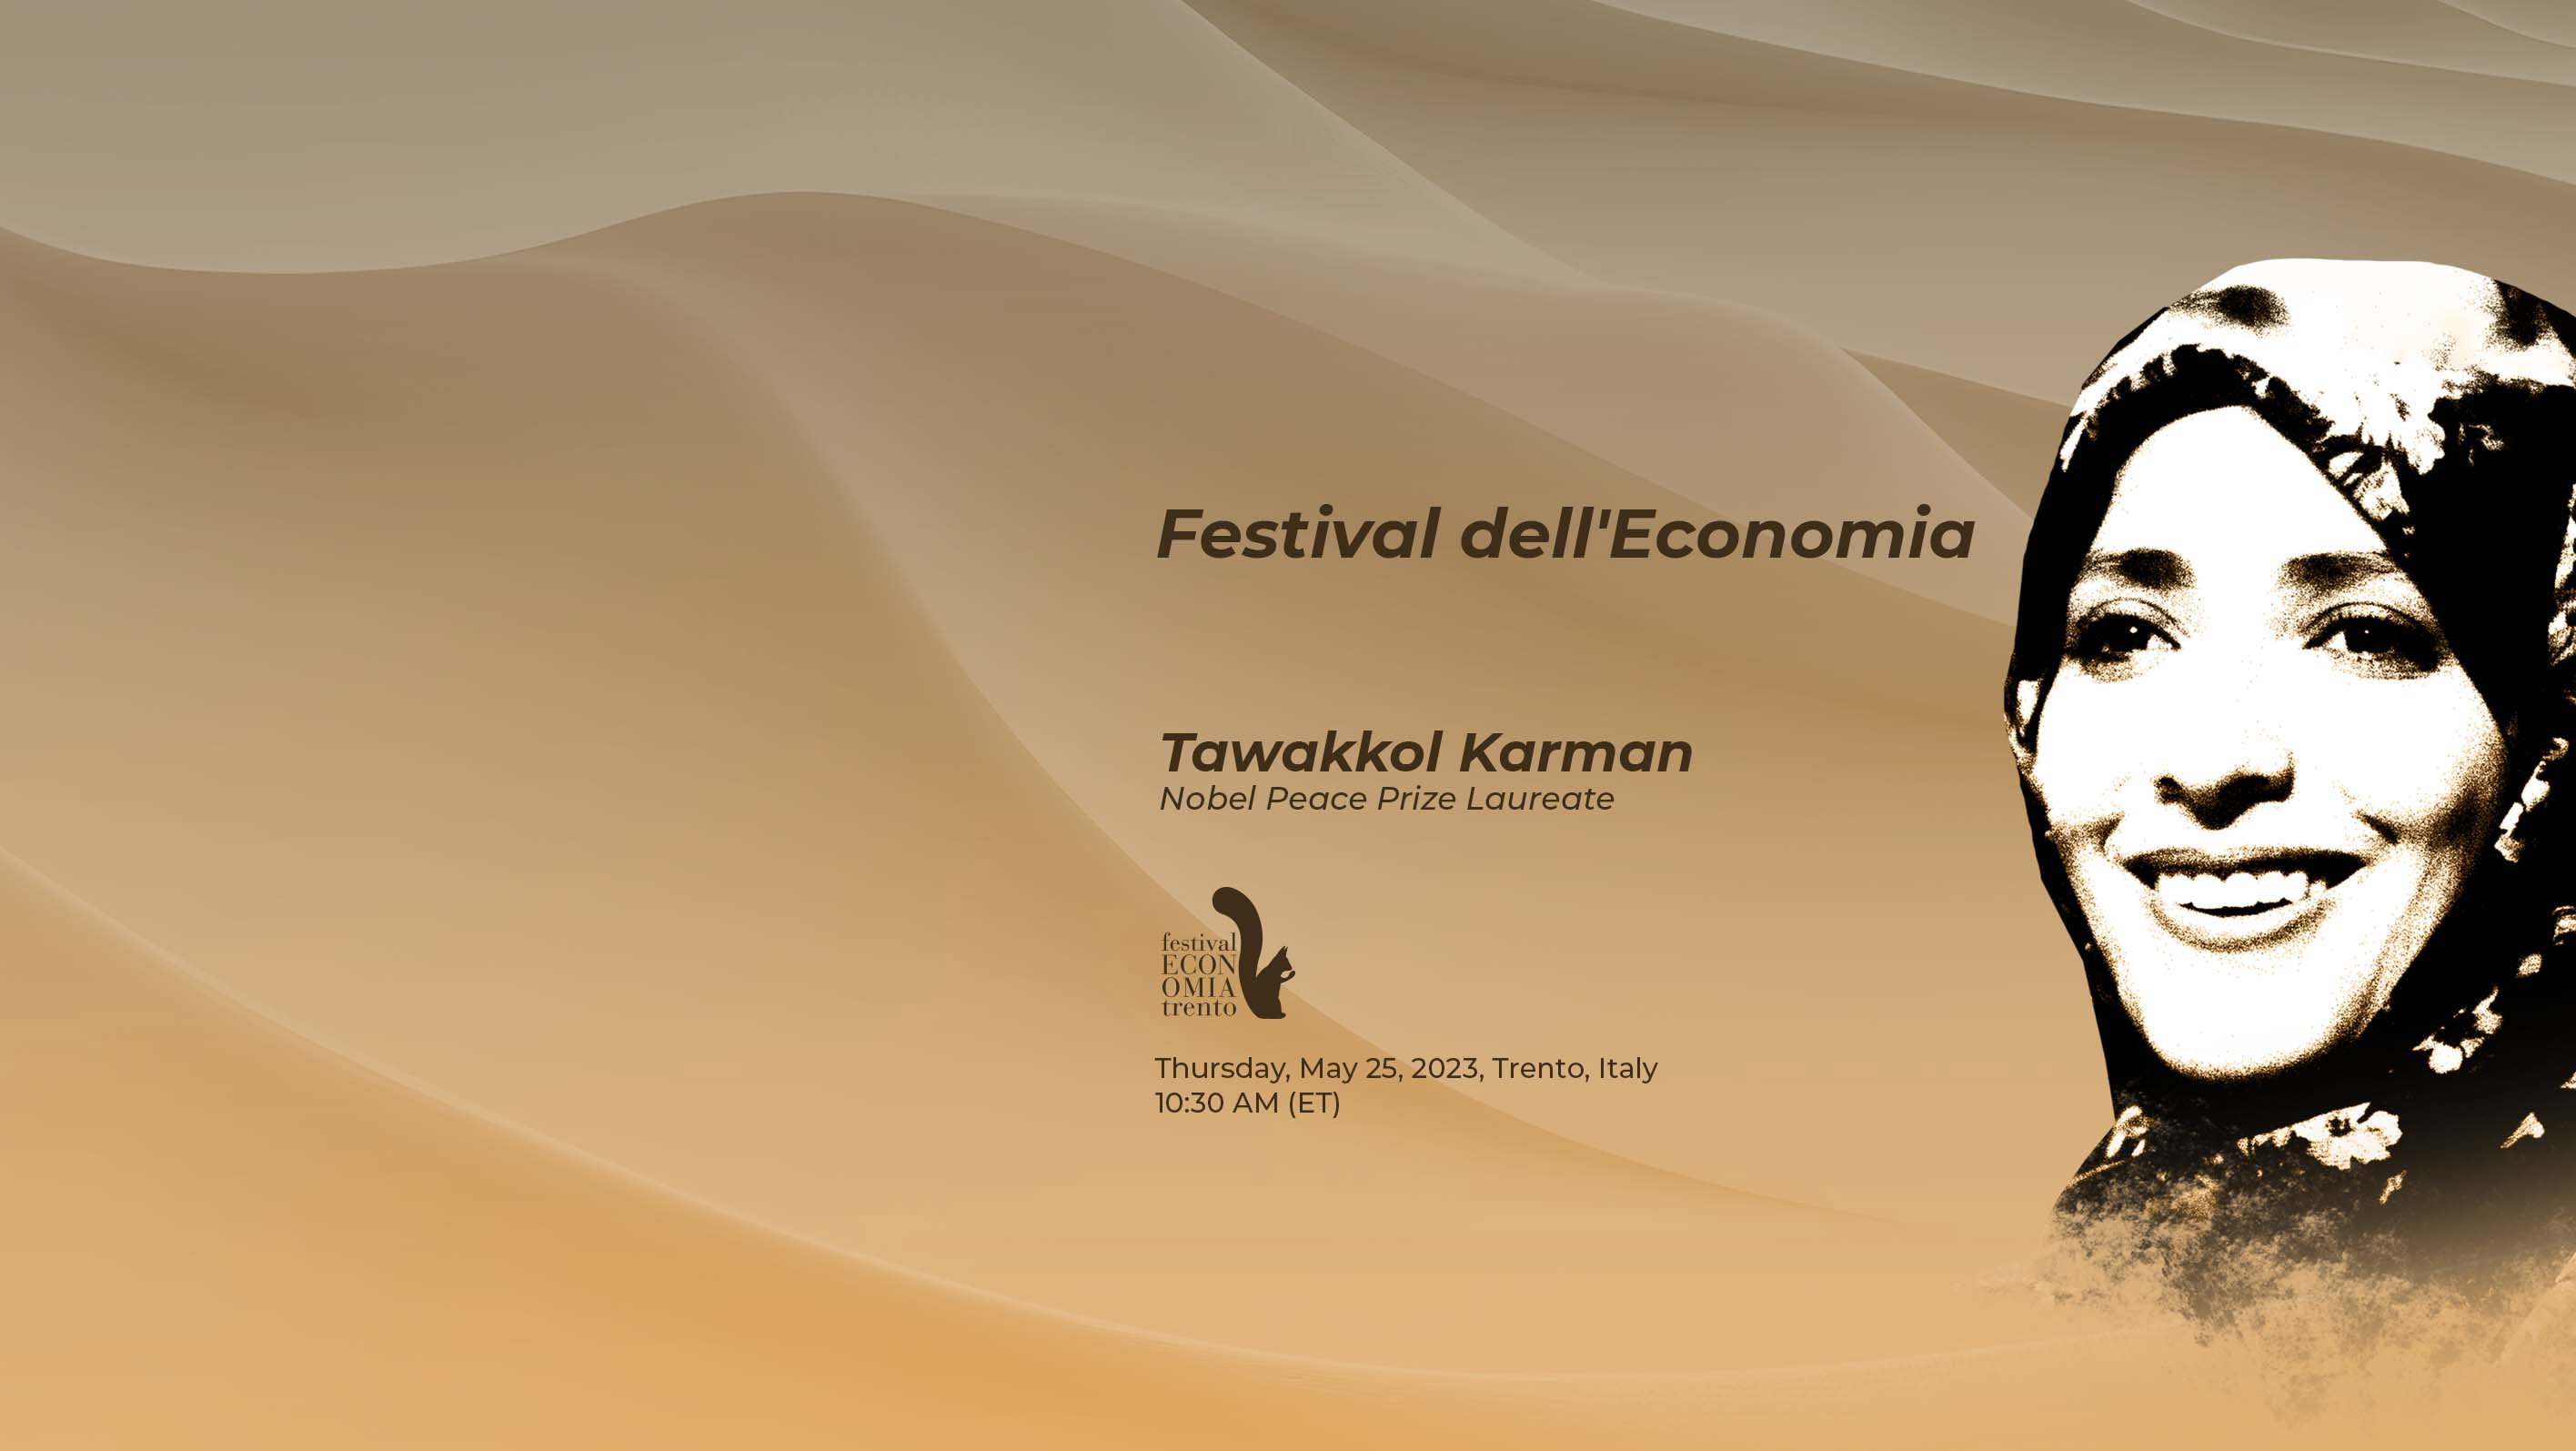 Tawakkol Karman to speak at Trento Festival of Economics